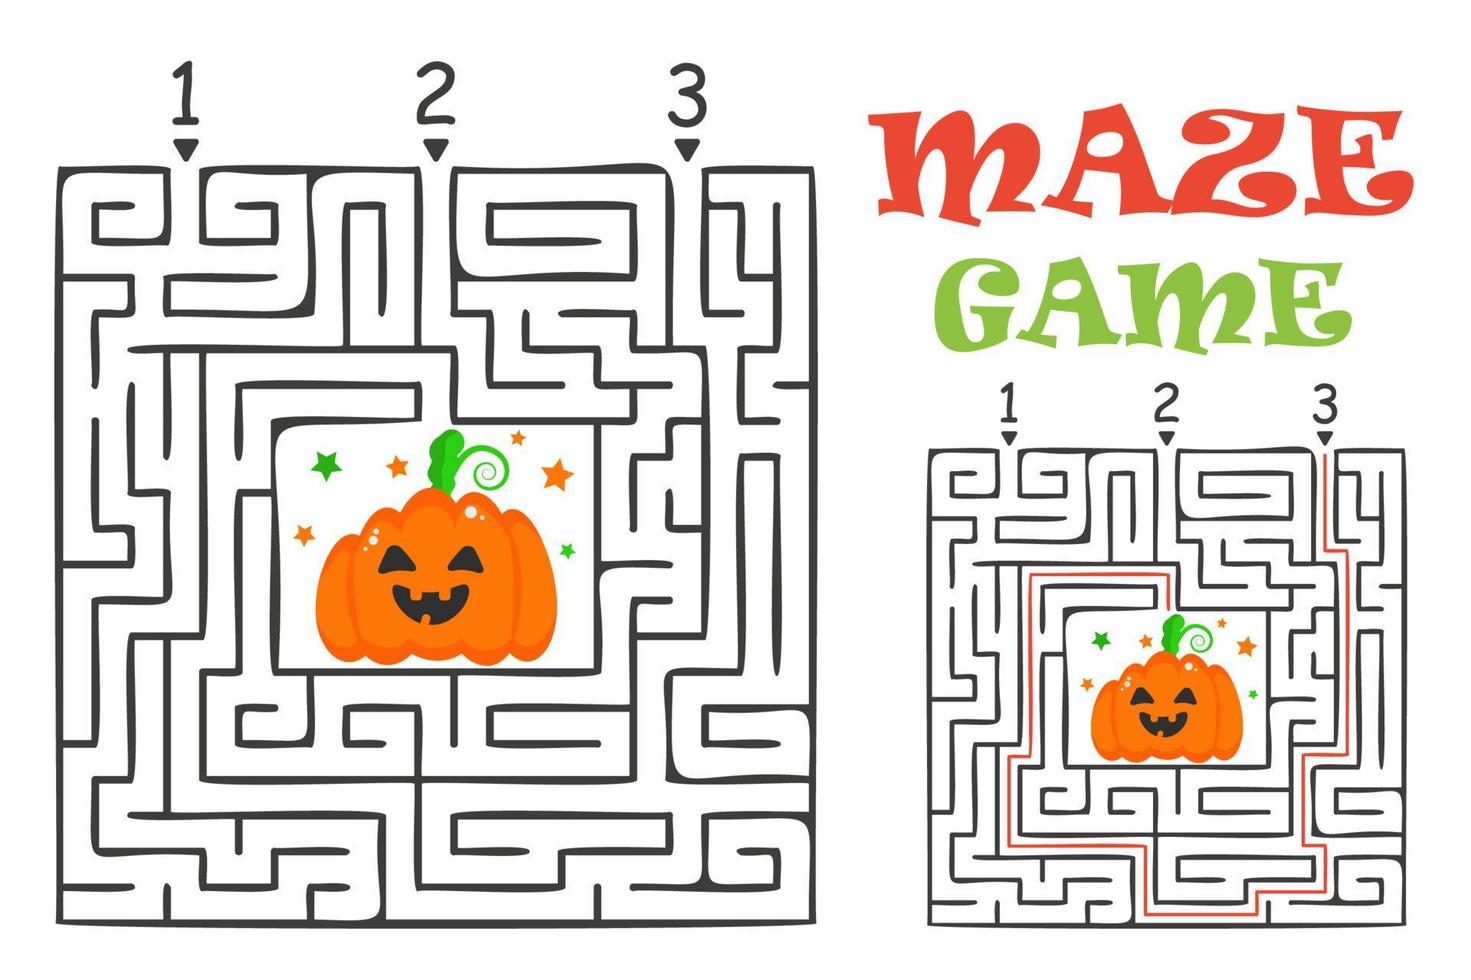 labirinto di halloween rettangolare gioco del labirinto per bambini. enigma logico del labirinto. tre ingressi e una strada da percorrere. illustrazione piatta vettoriale isolato su sfondo bianco.